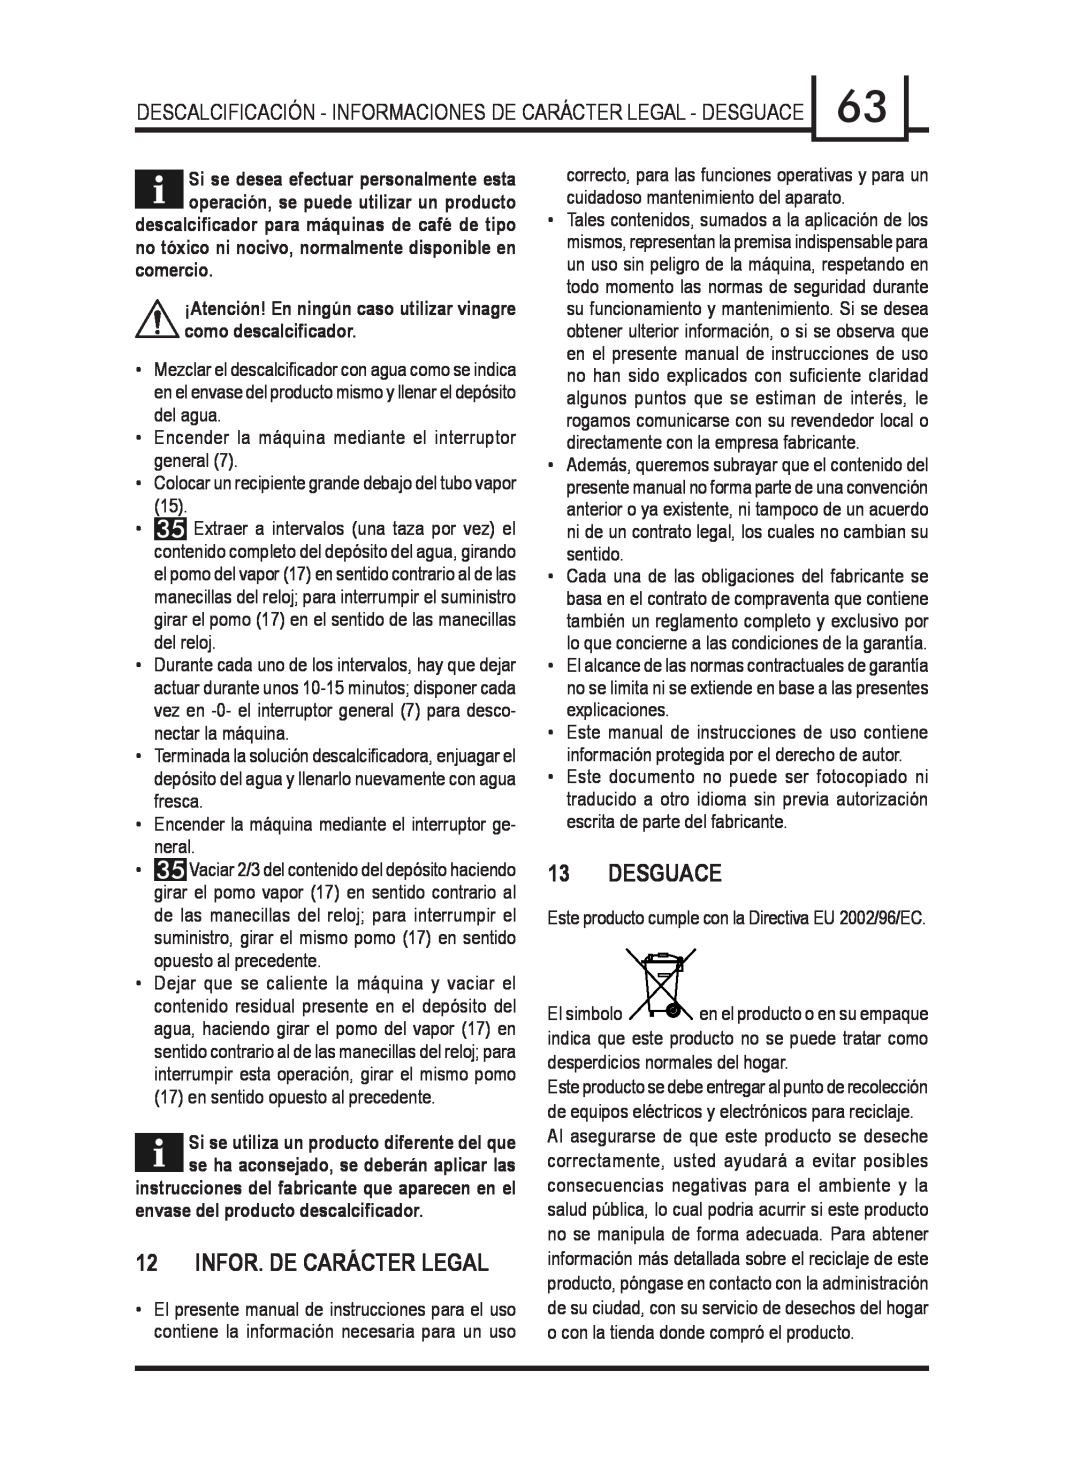 Gaggia 740903008 manual Infor. De Carácter Legal, Desguace, envase del producto descalciﬁcador 